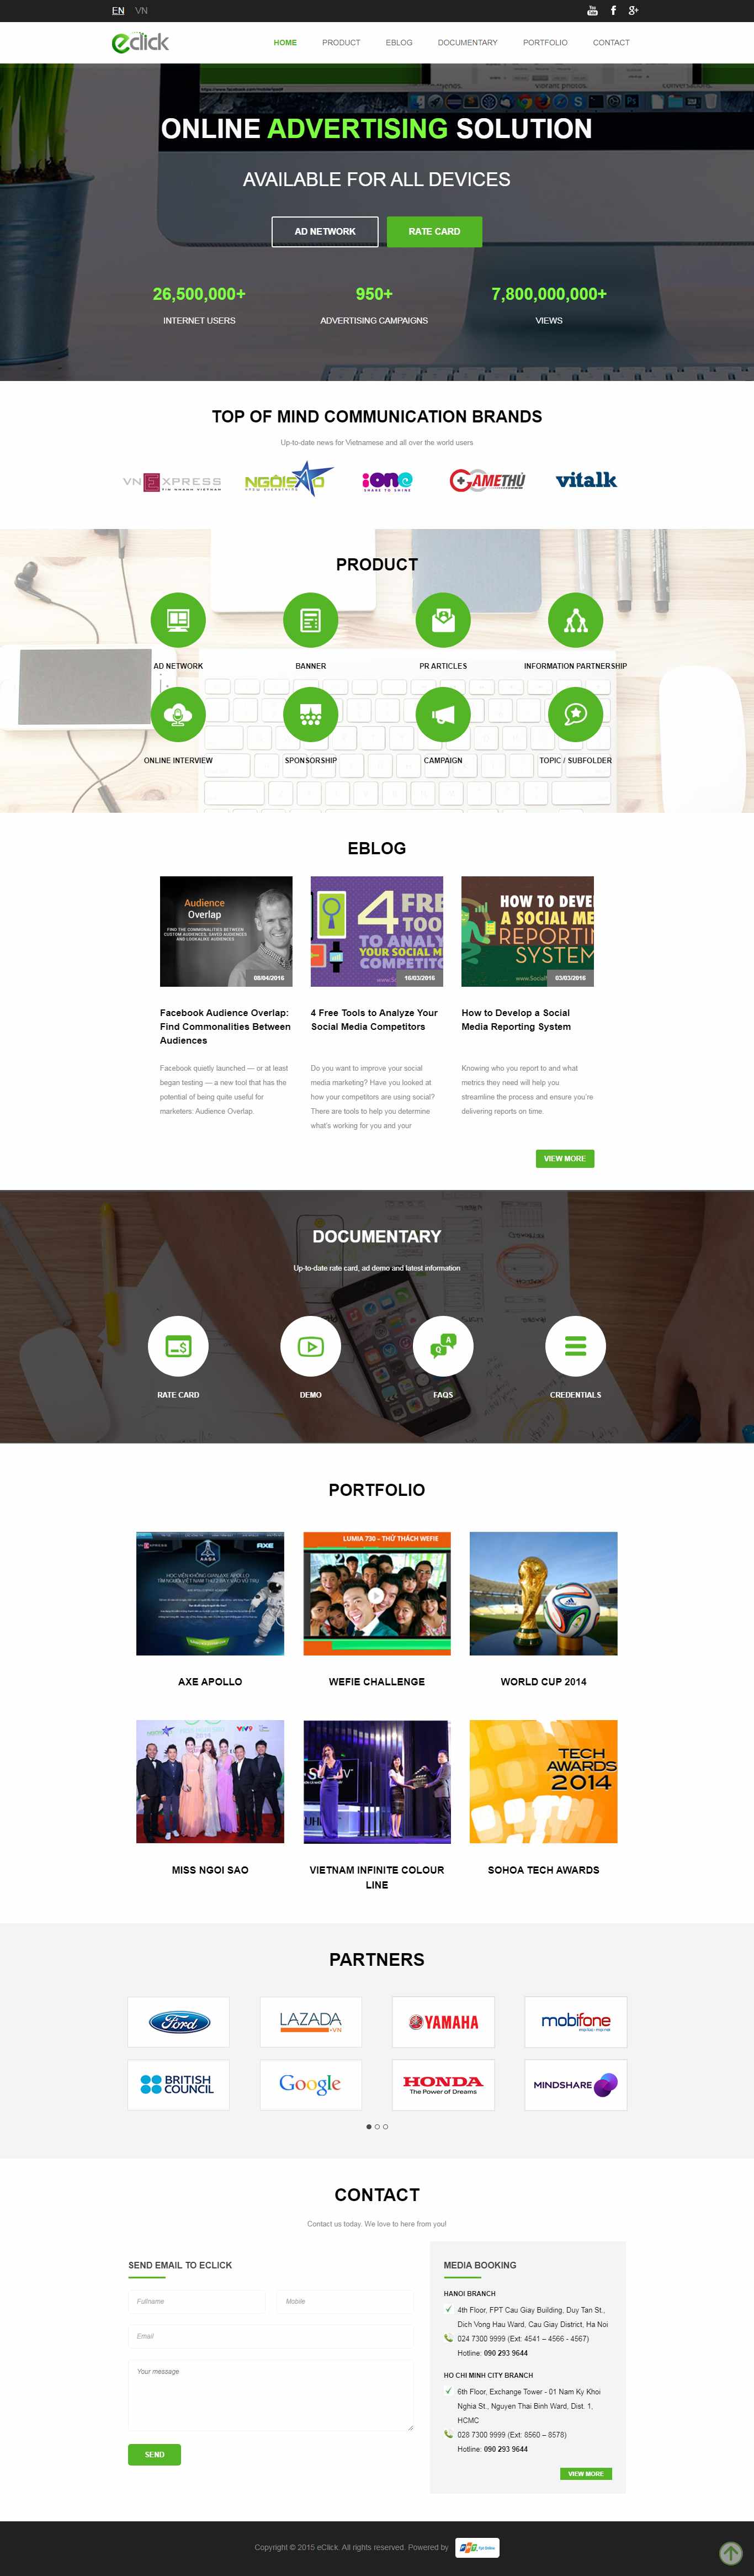 Thiết kế Website quảng cáo trực tuyến - eclick.vn